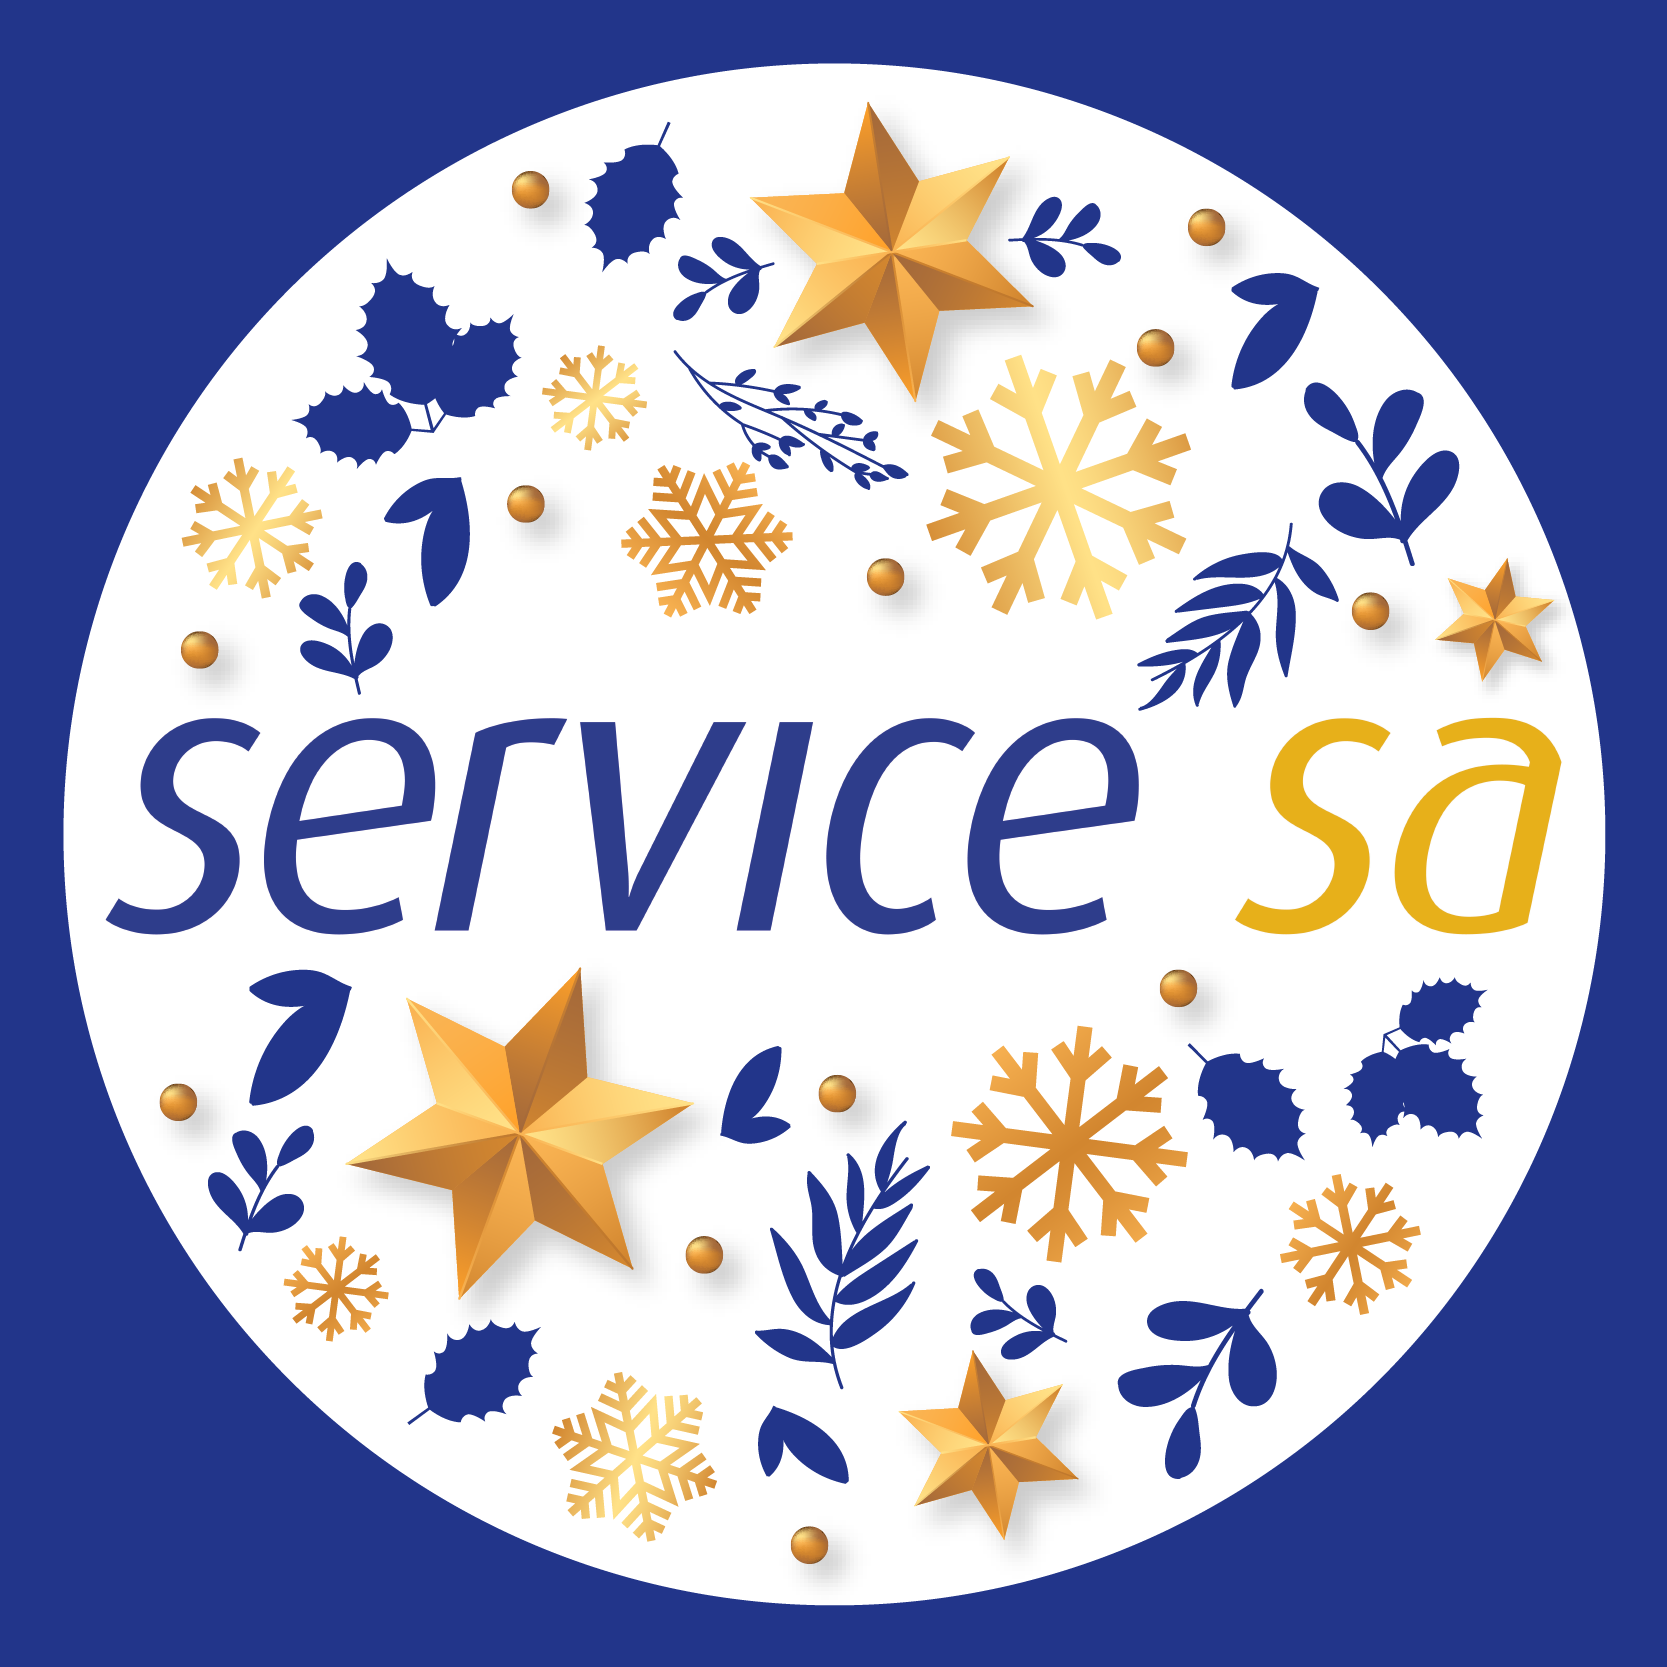 Service Festive logo